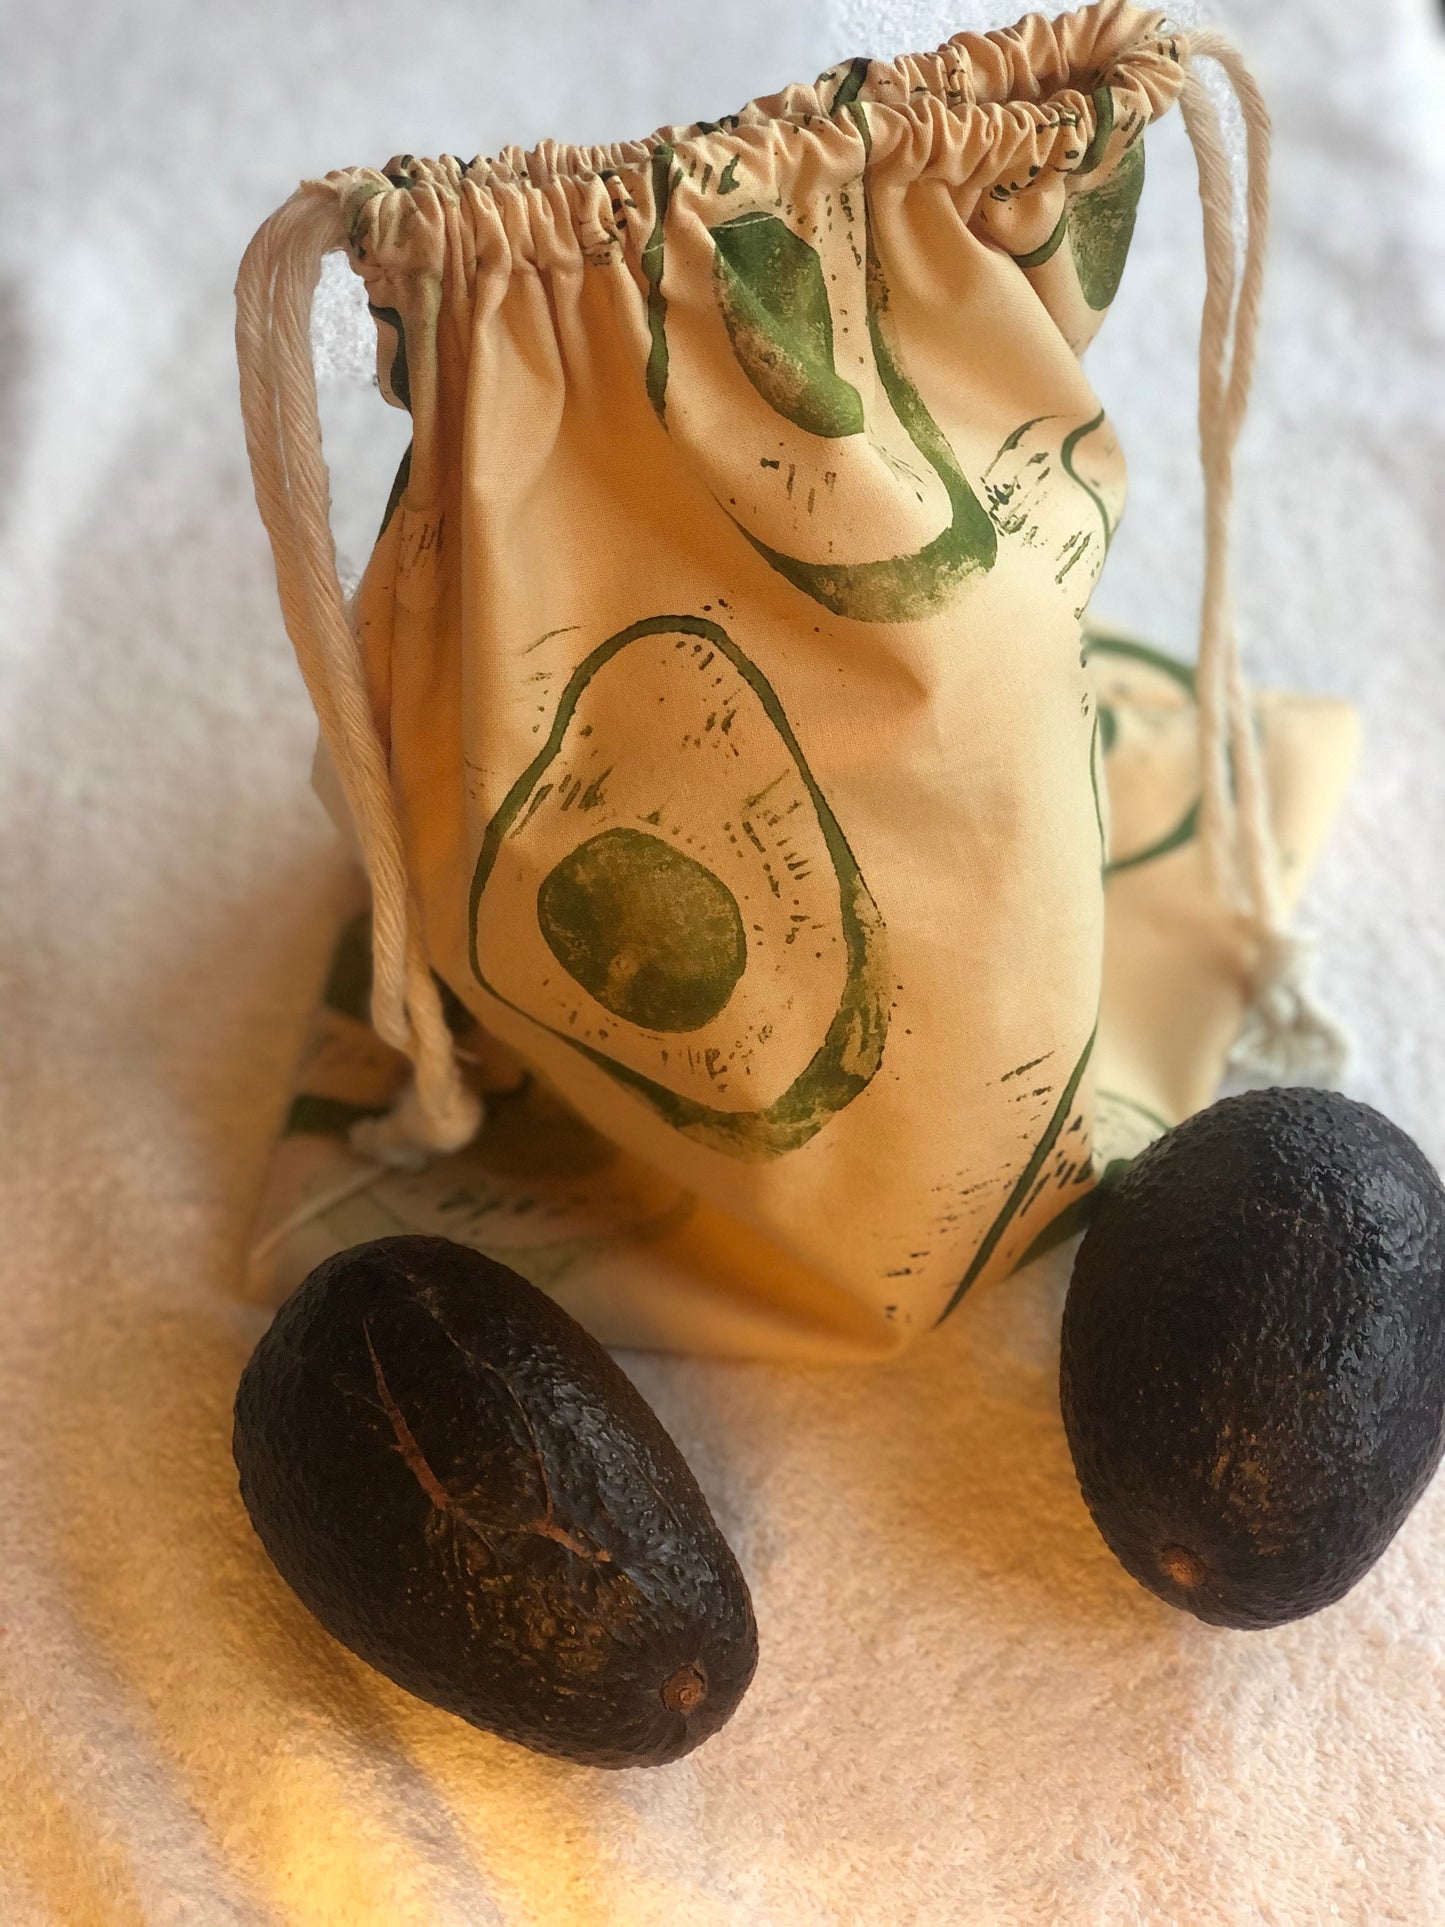 Reusable Produce Bag - Hand printed Avocado Cotton